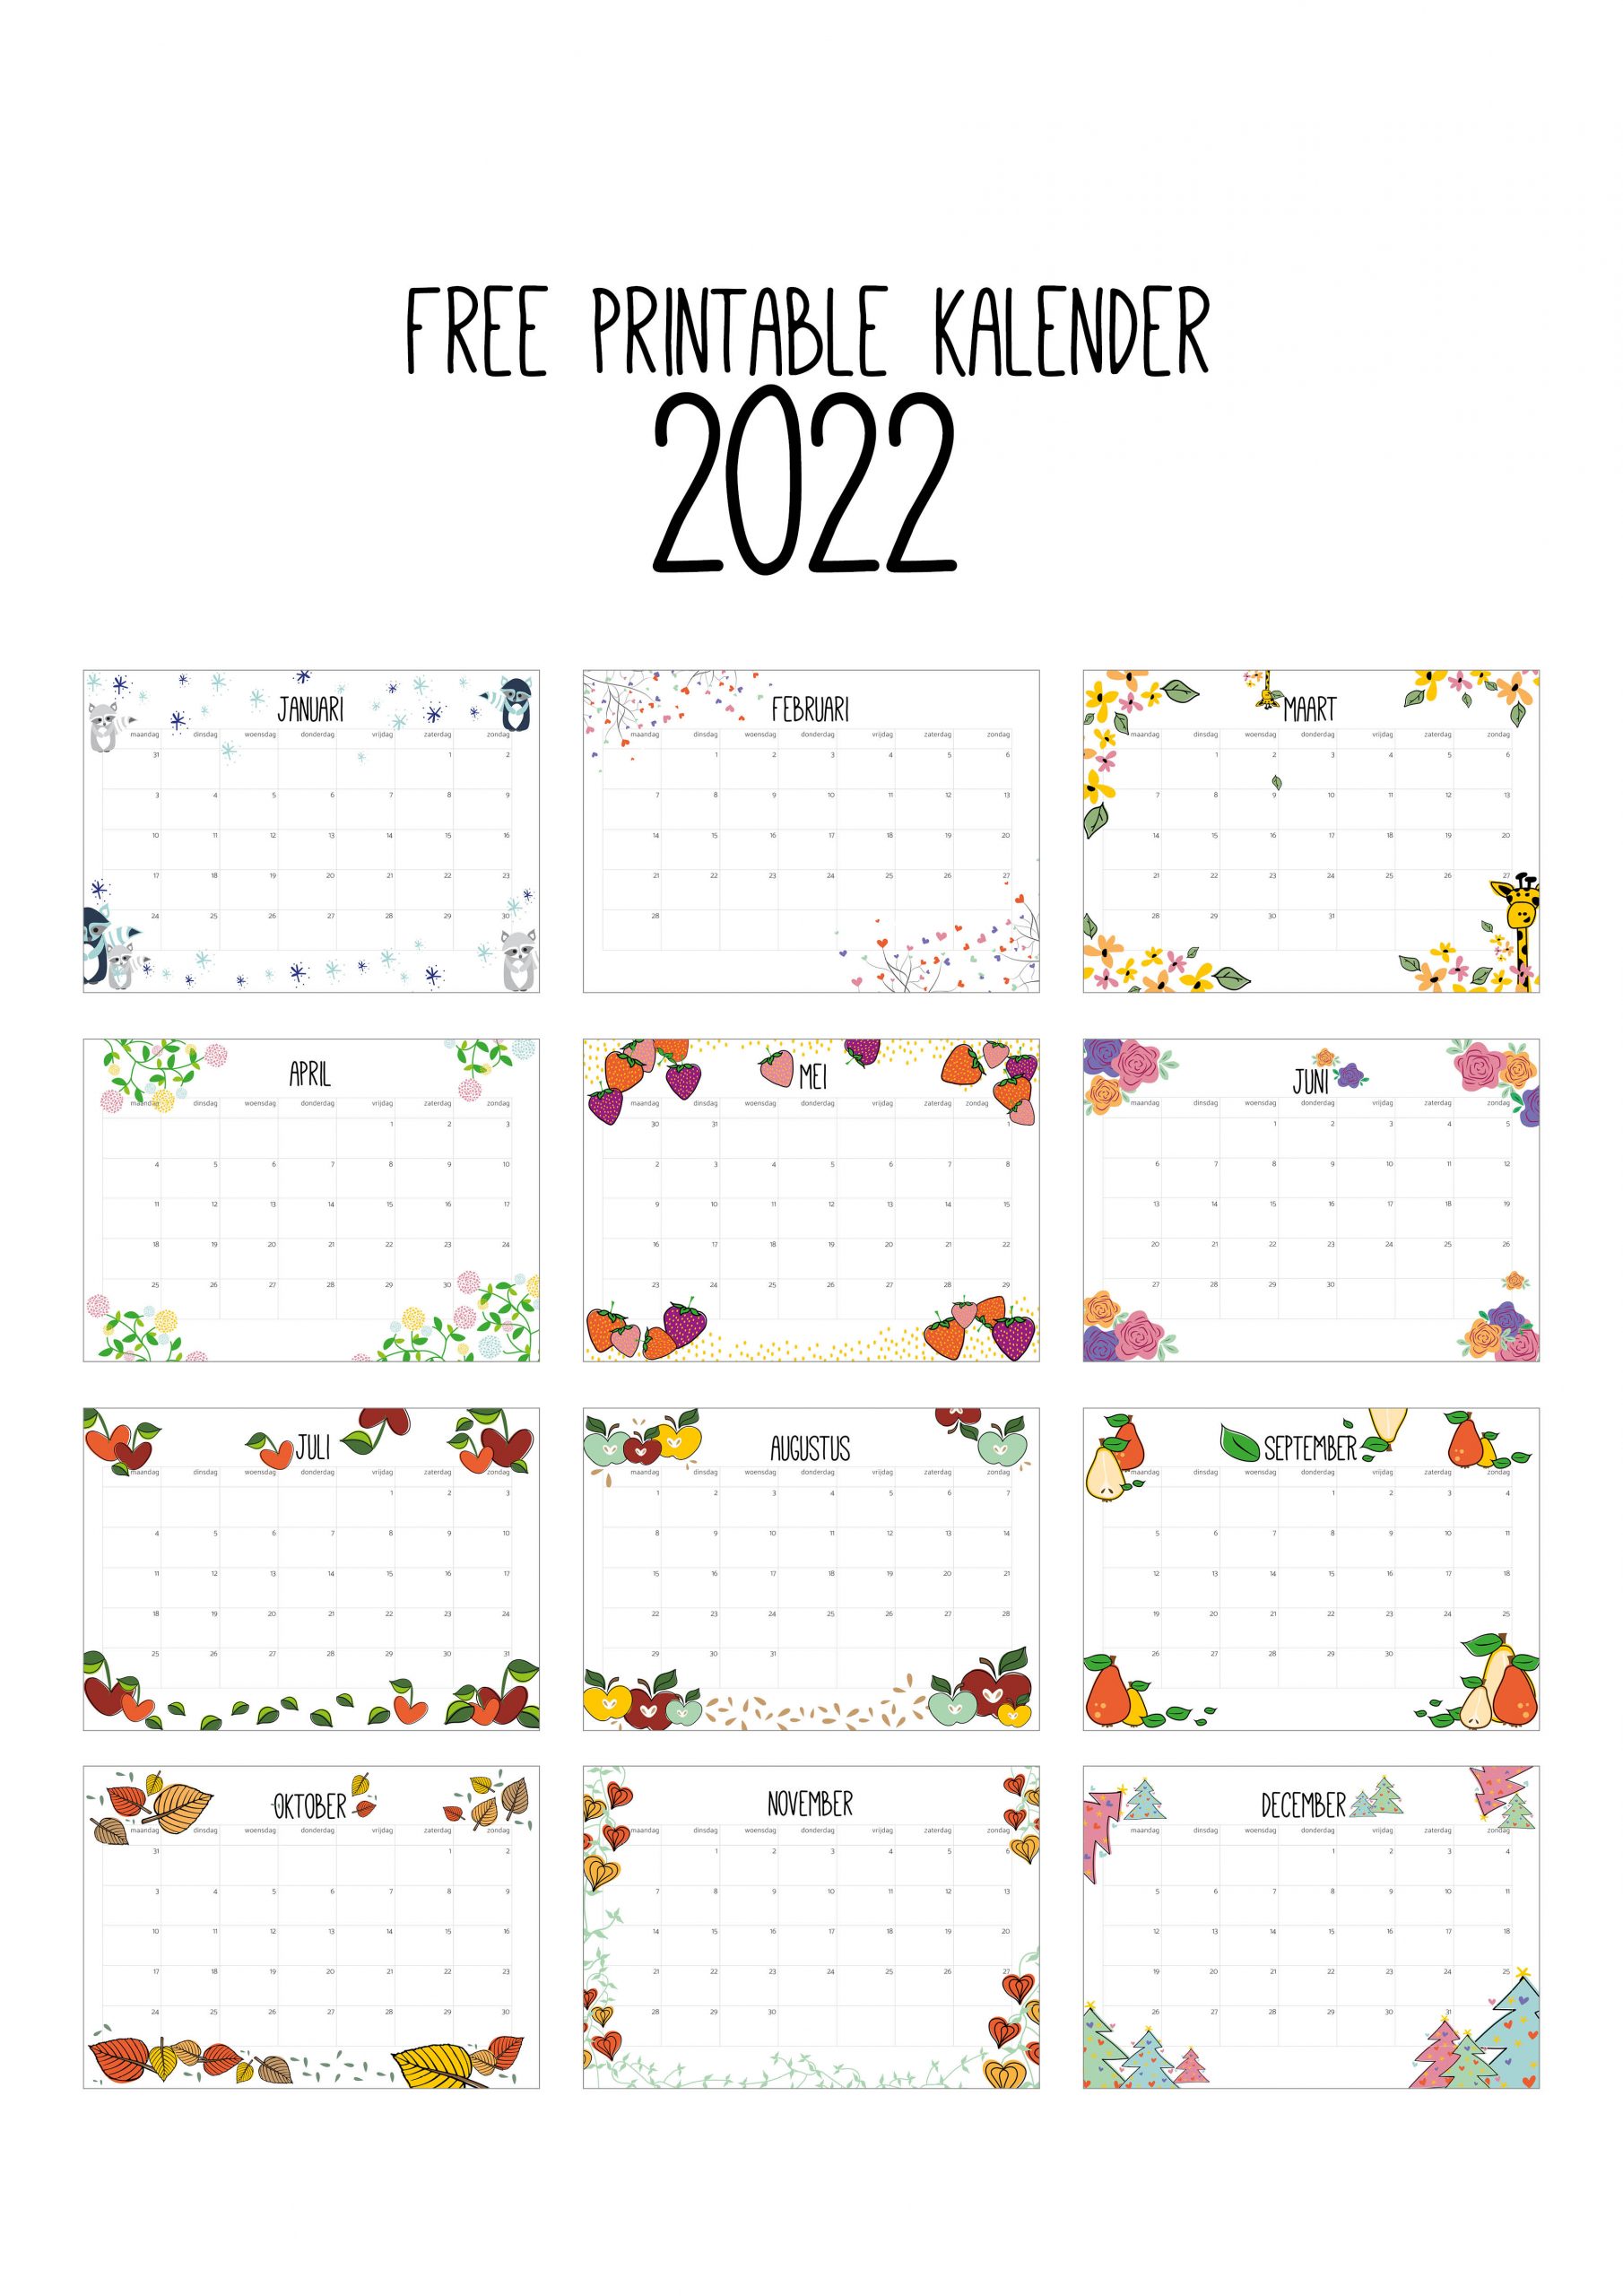 Free Printable kalender 2022